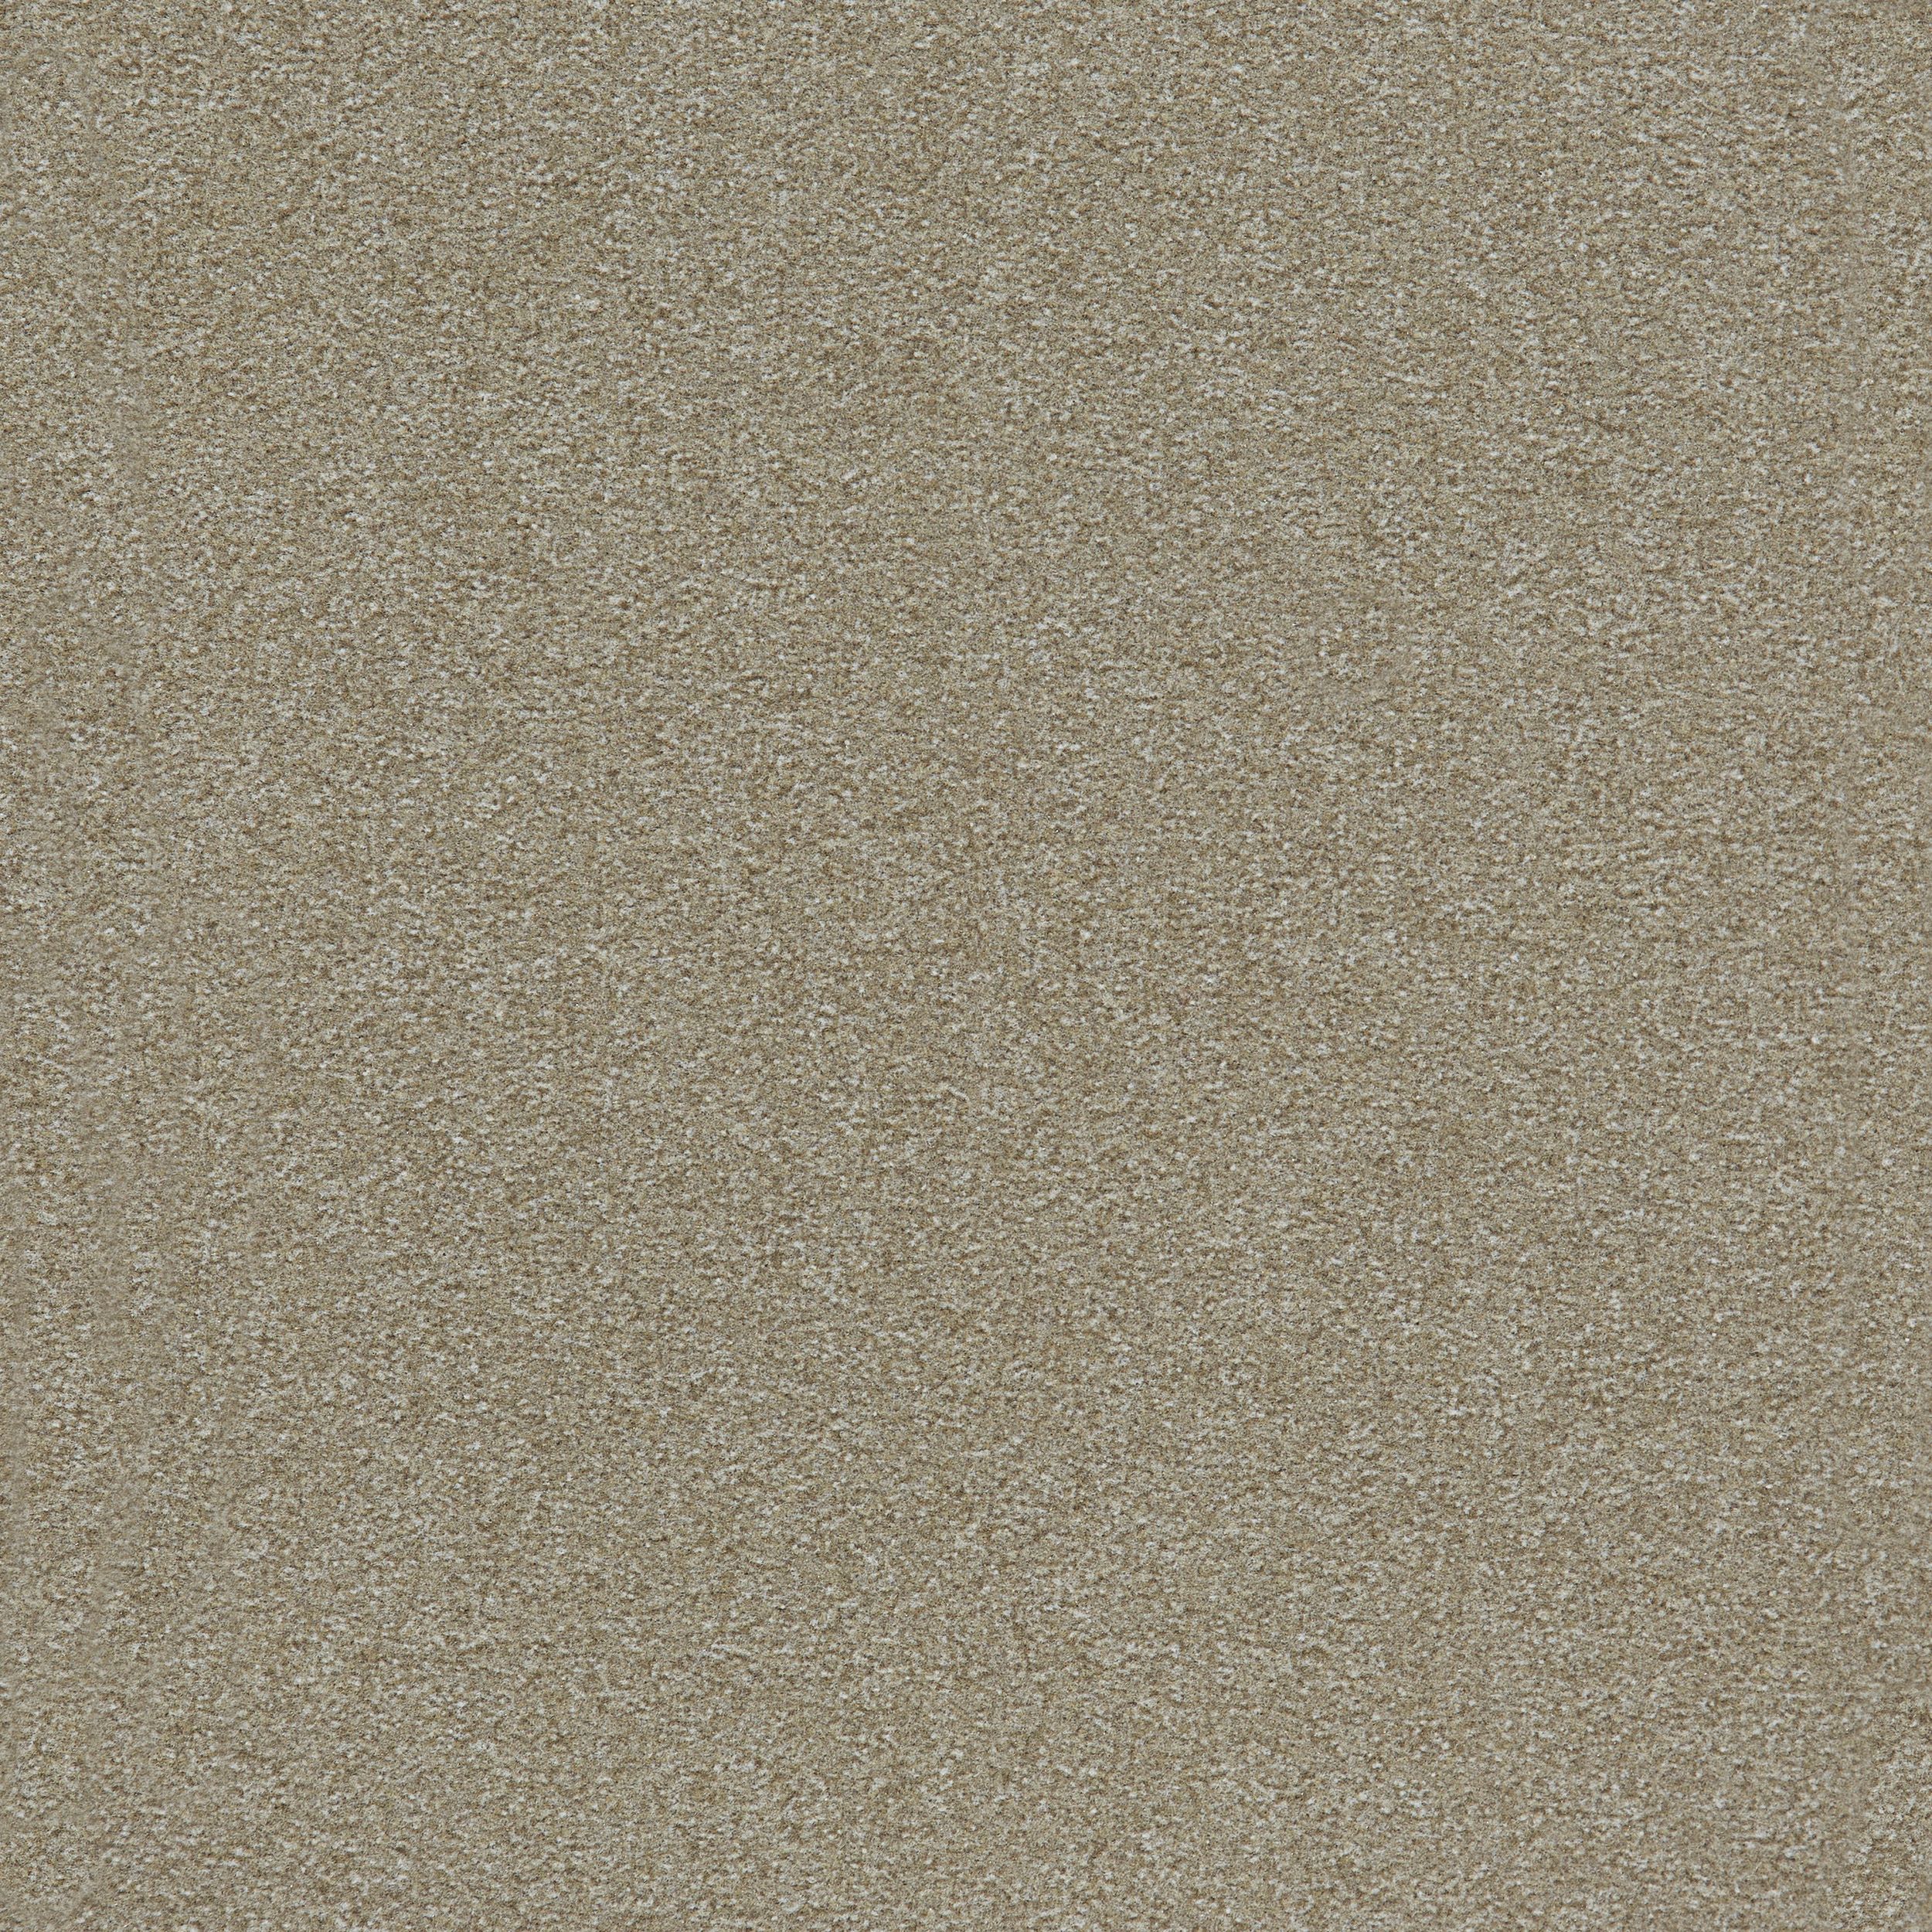 Heuga 725 Carpet Tile In Oyster número de imagen 5